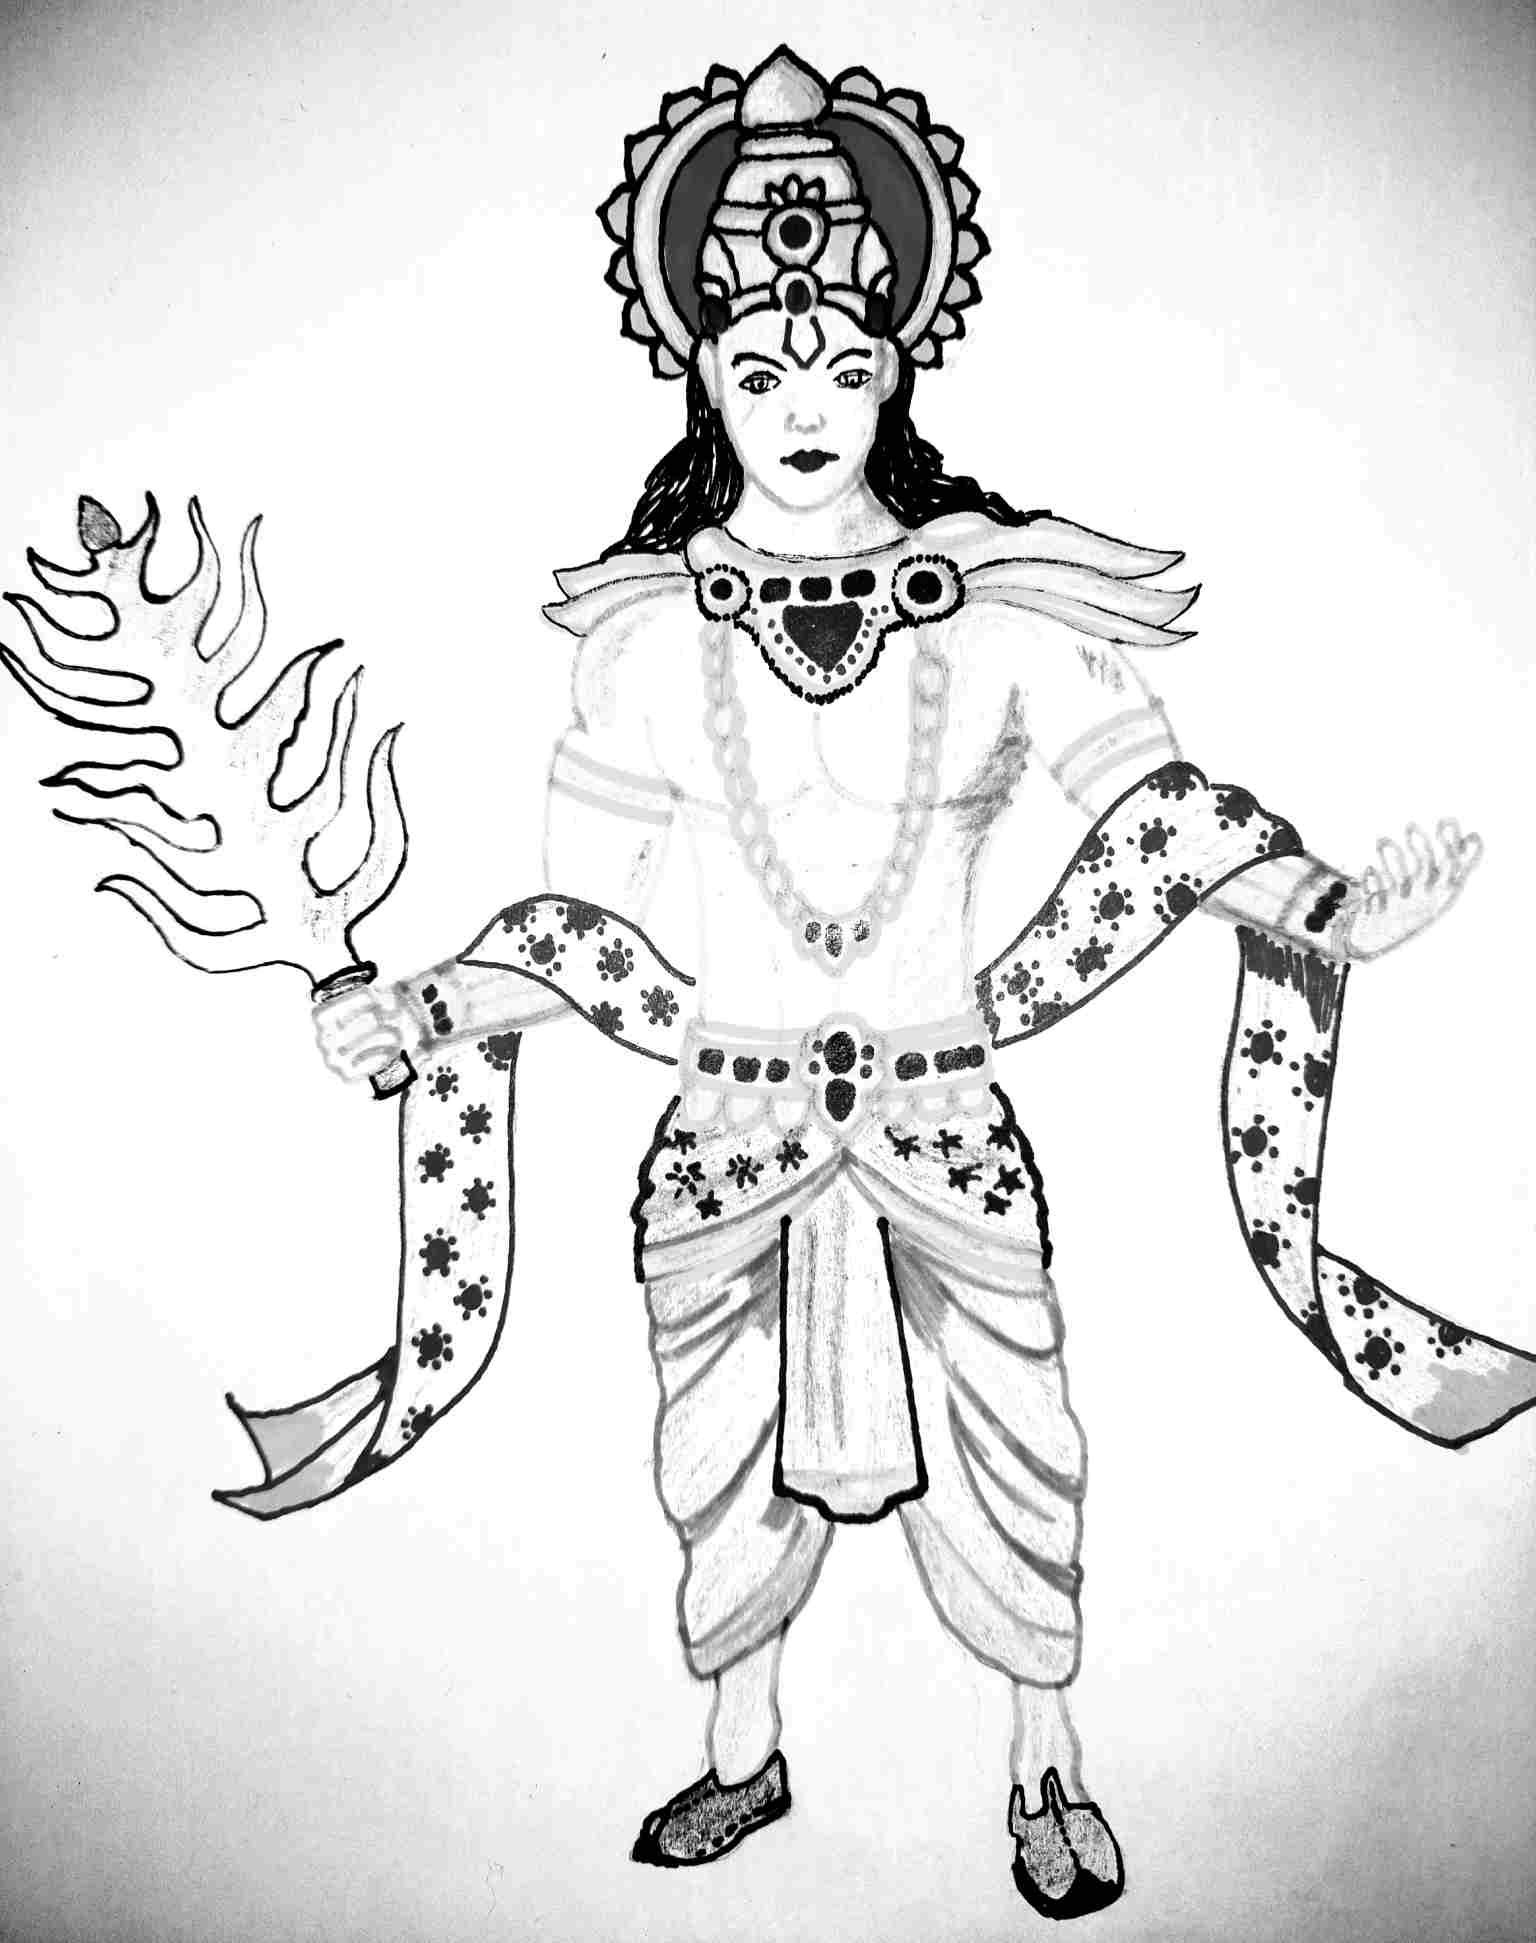 Sketch of Devraj Indra